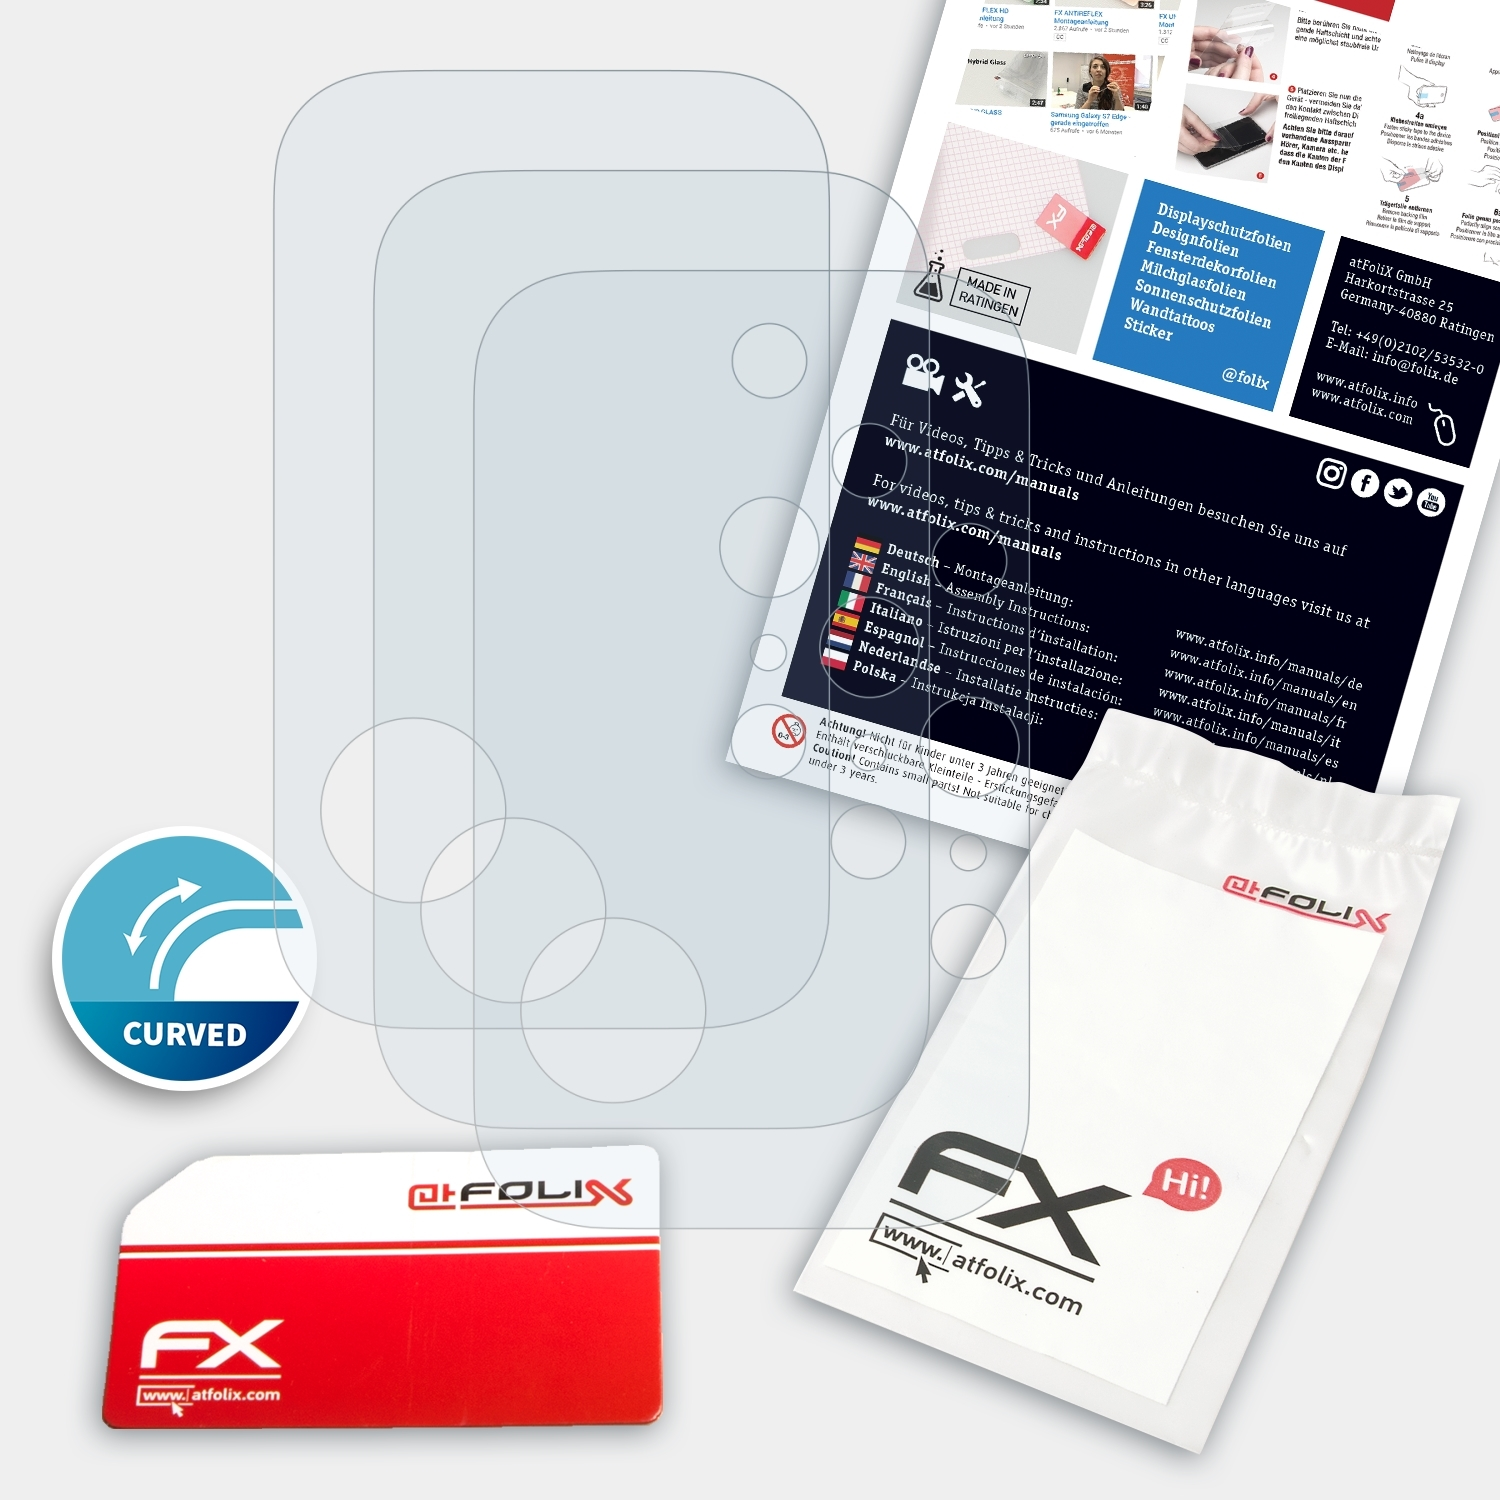 3x Lenovo Legion Lens) Phone FX-ActiFleX 2 ATFOLIX Duel Displayschutz(für